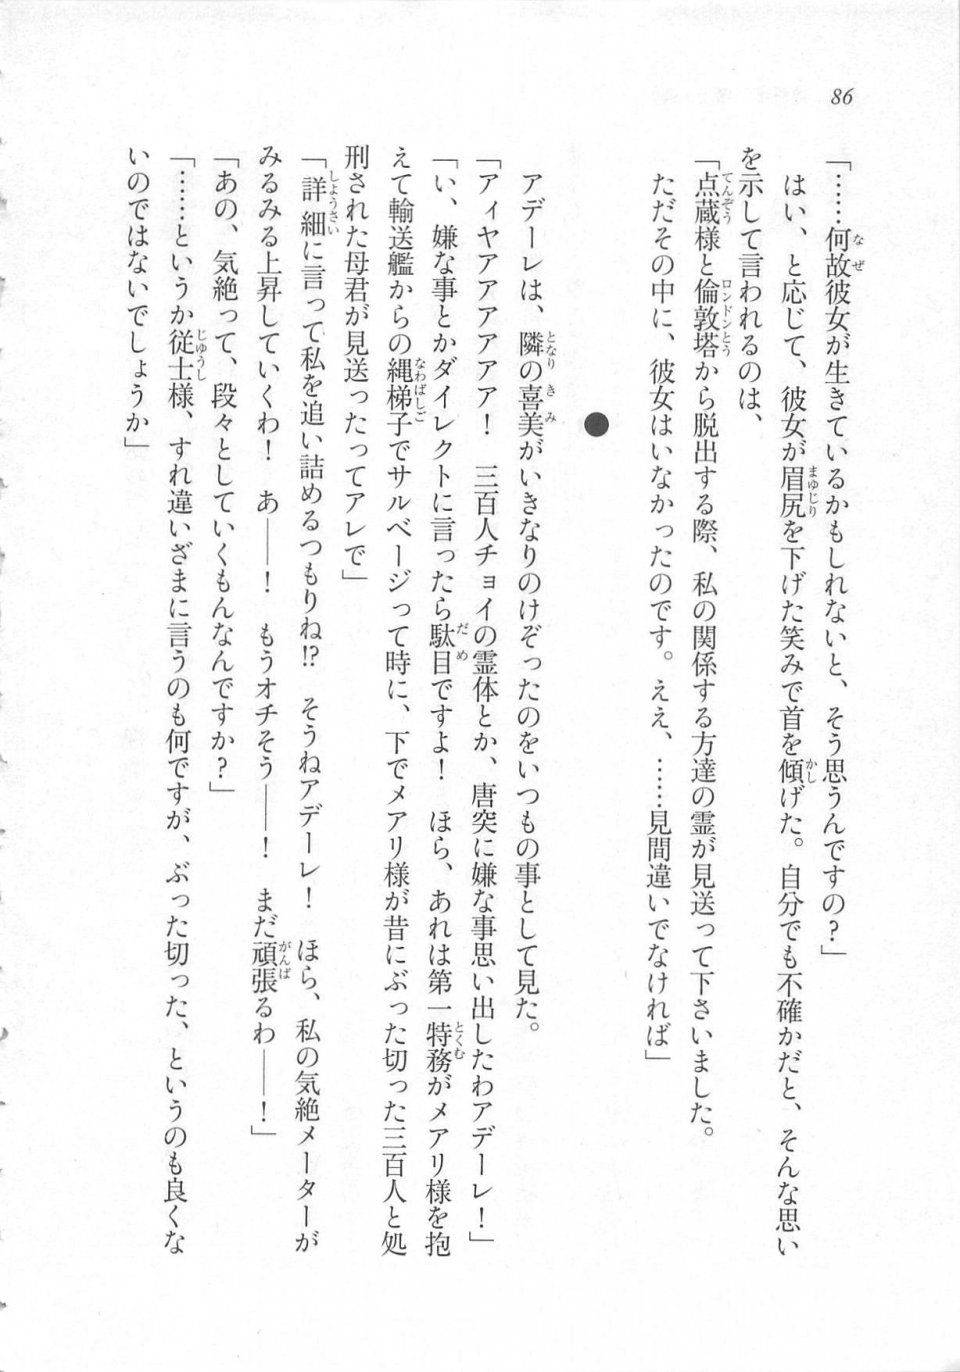 Kyoukai Senjou no Horizon LN Sidestory Vol 3 - Photo #90